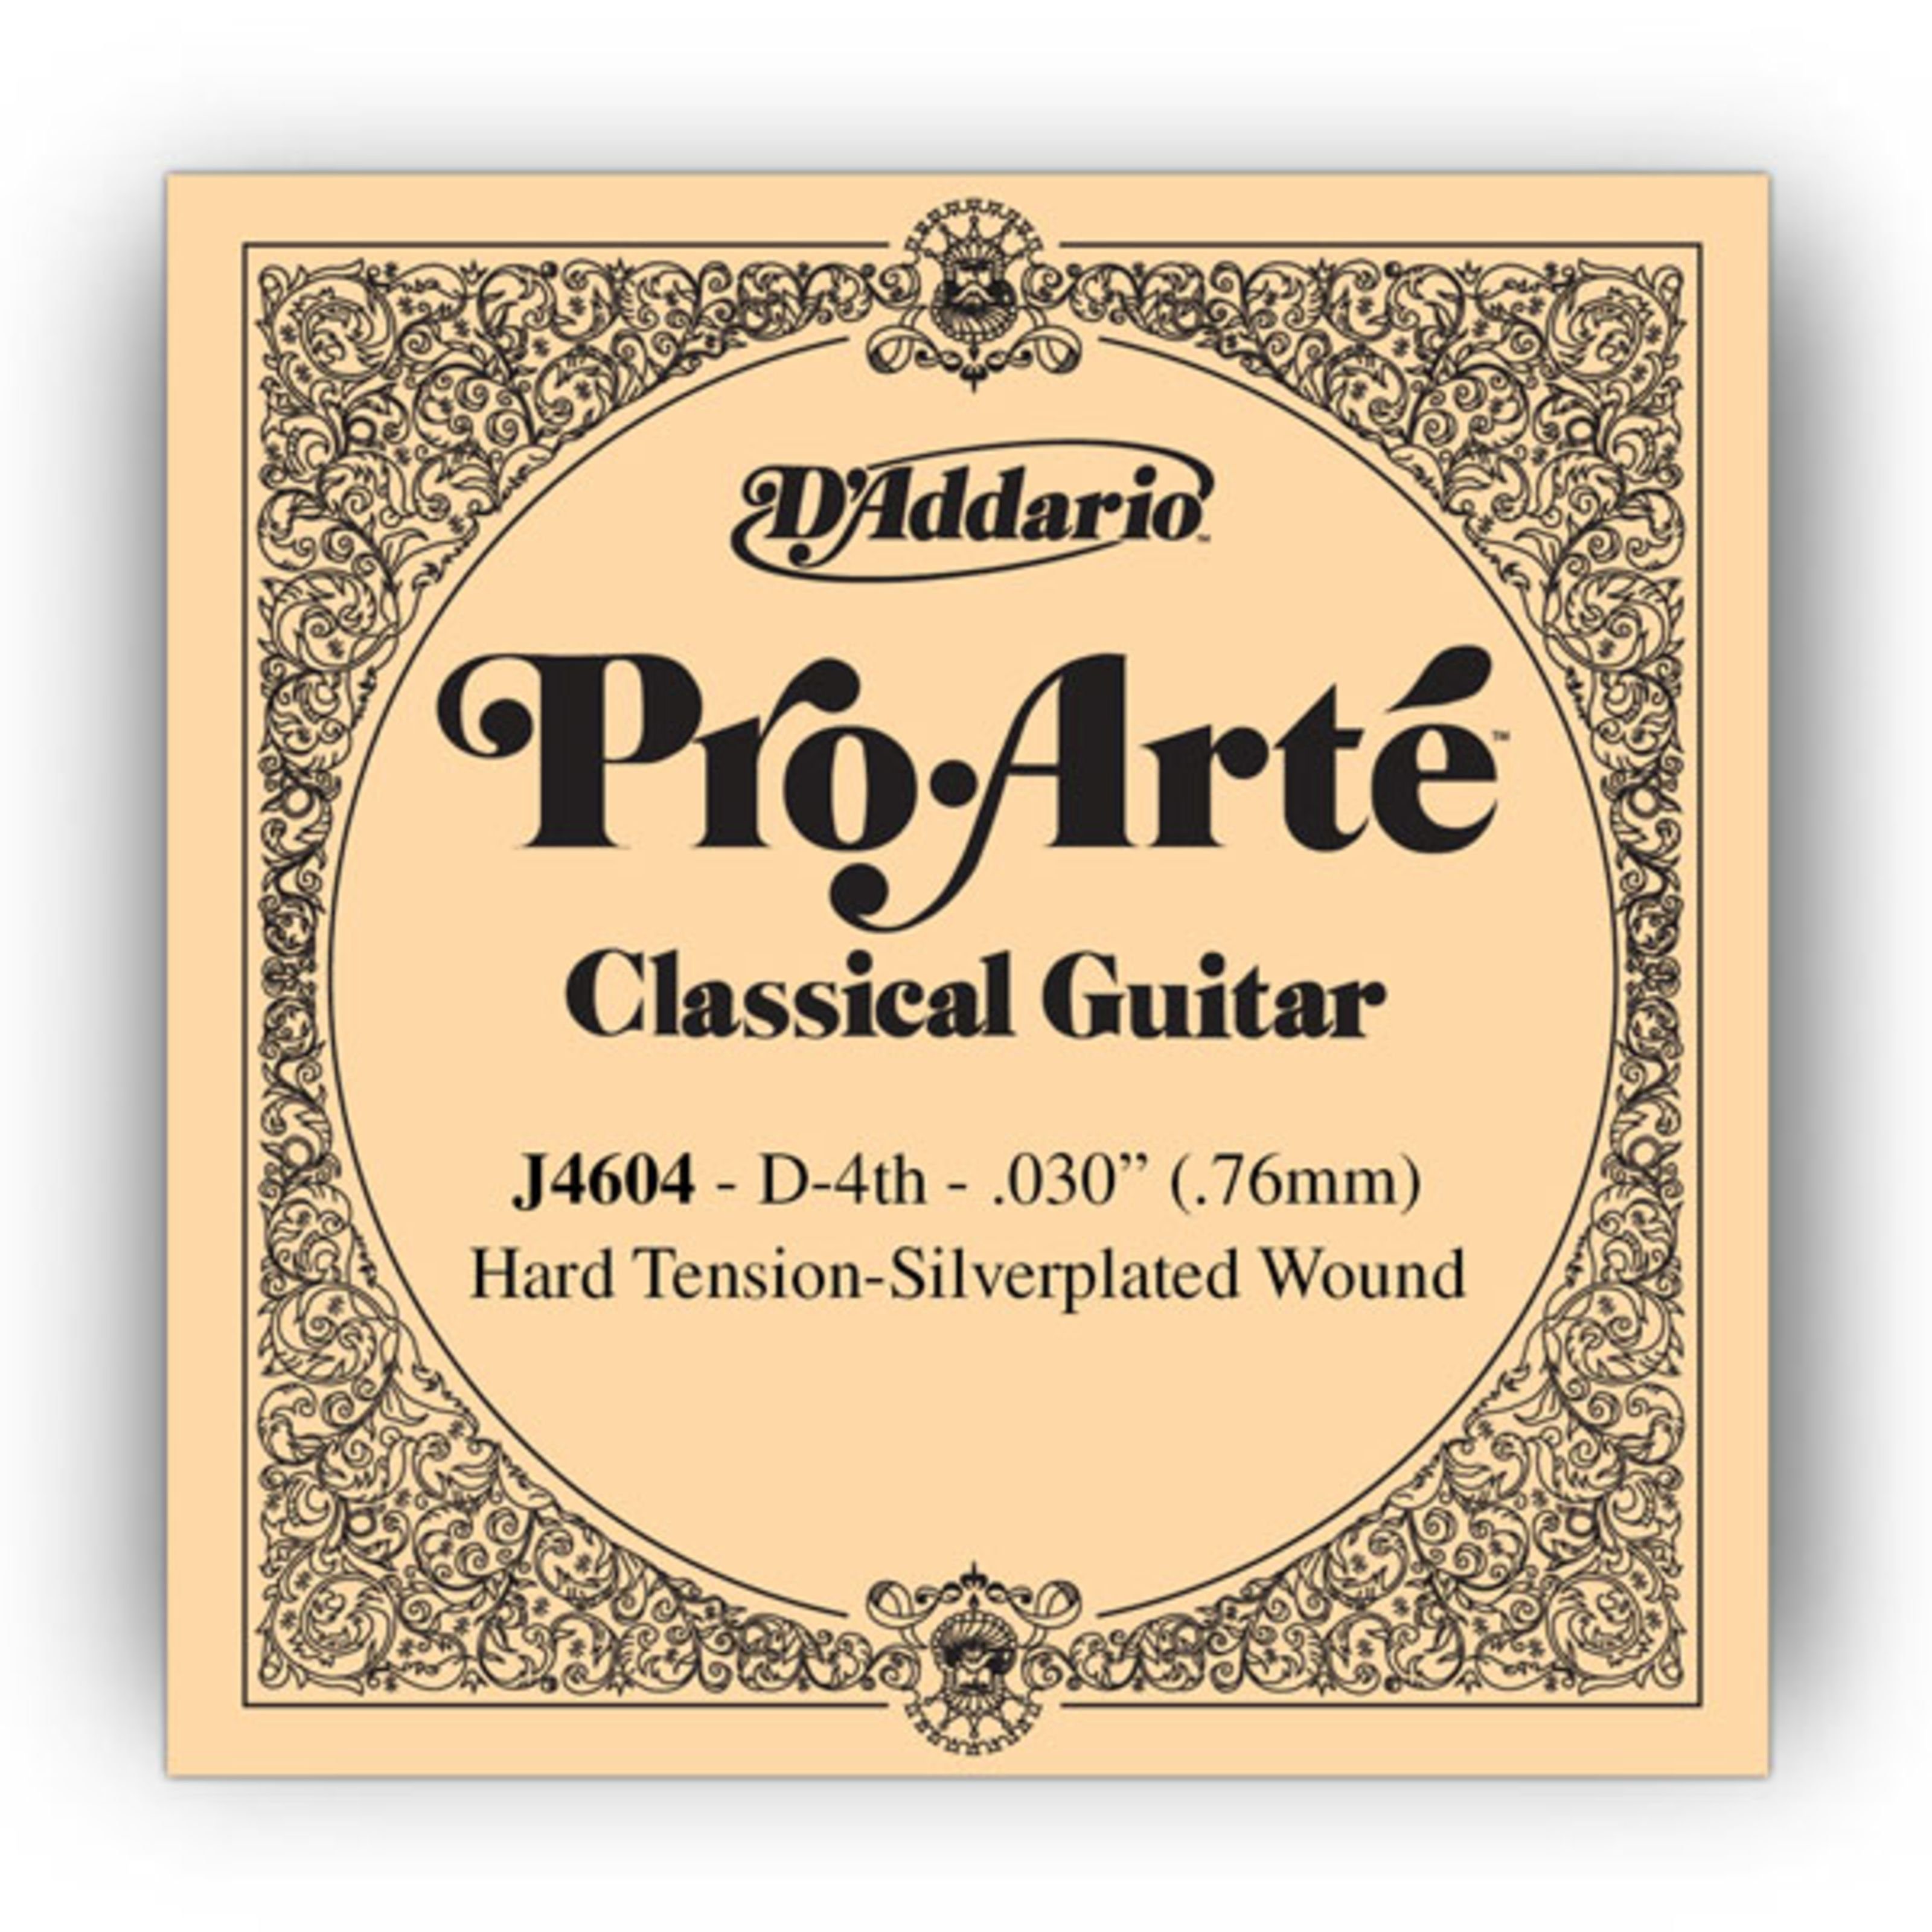 Daddario Spielzeug-Musikinstrument, J4604 D4 Pro Arte Einzelsaite Hard Tension 030/J46 - Einzelsaite für G